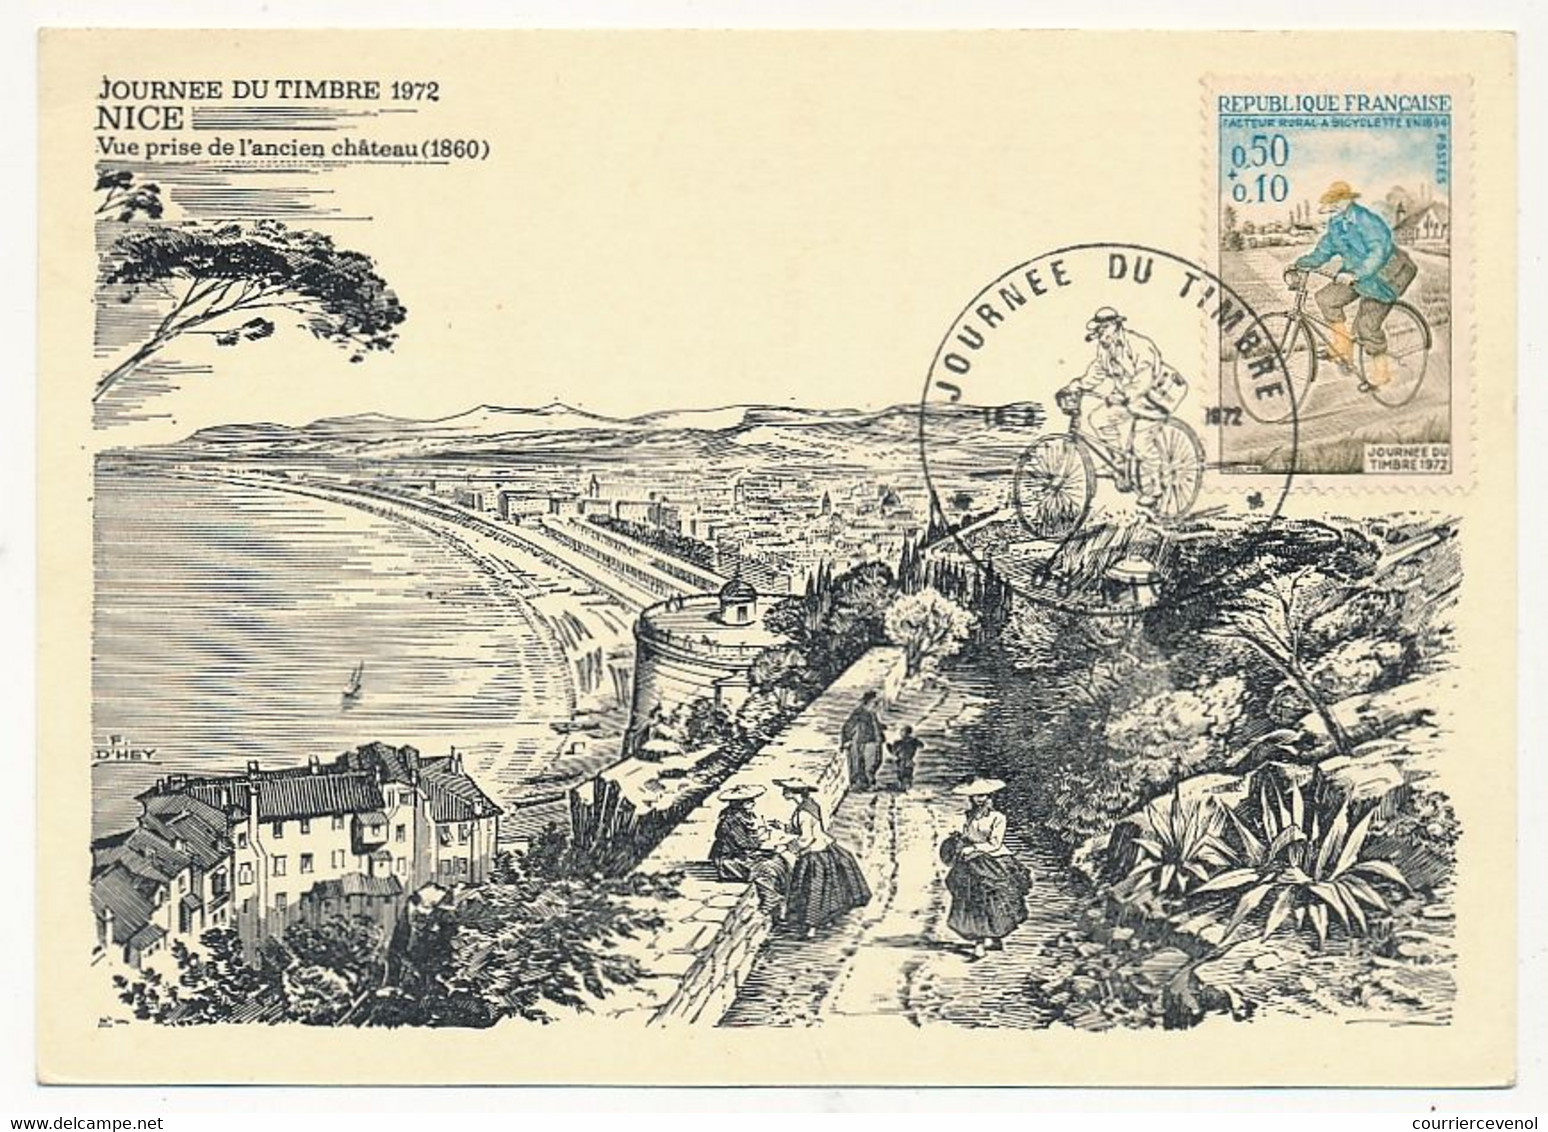 FRANCE - Carte Locale - Journée Du Timbre 1972 - Facteur Rural à Bicyclette - 06 NICE - 18 Mars 1972 - Journée Du Timbre